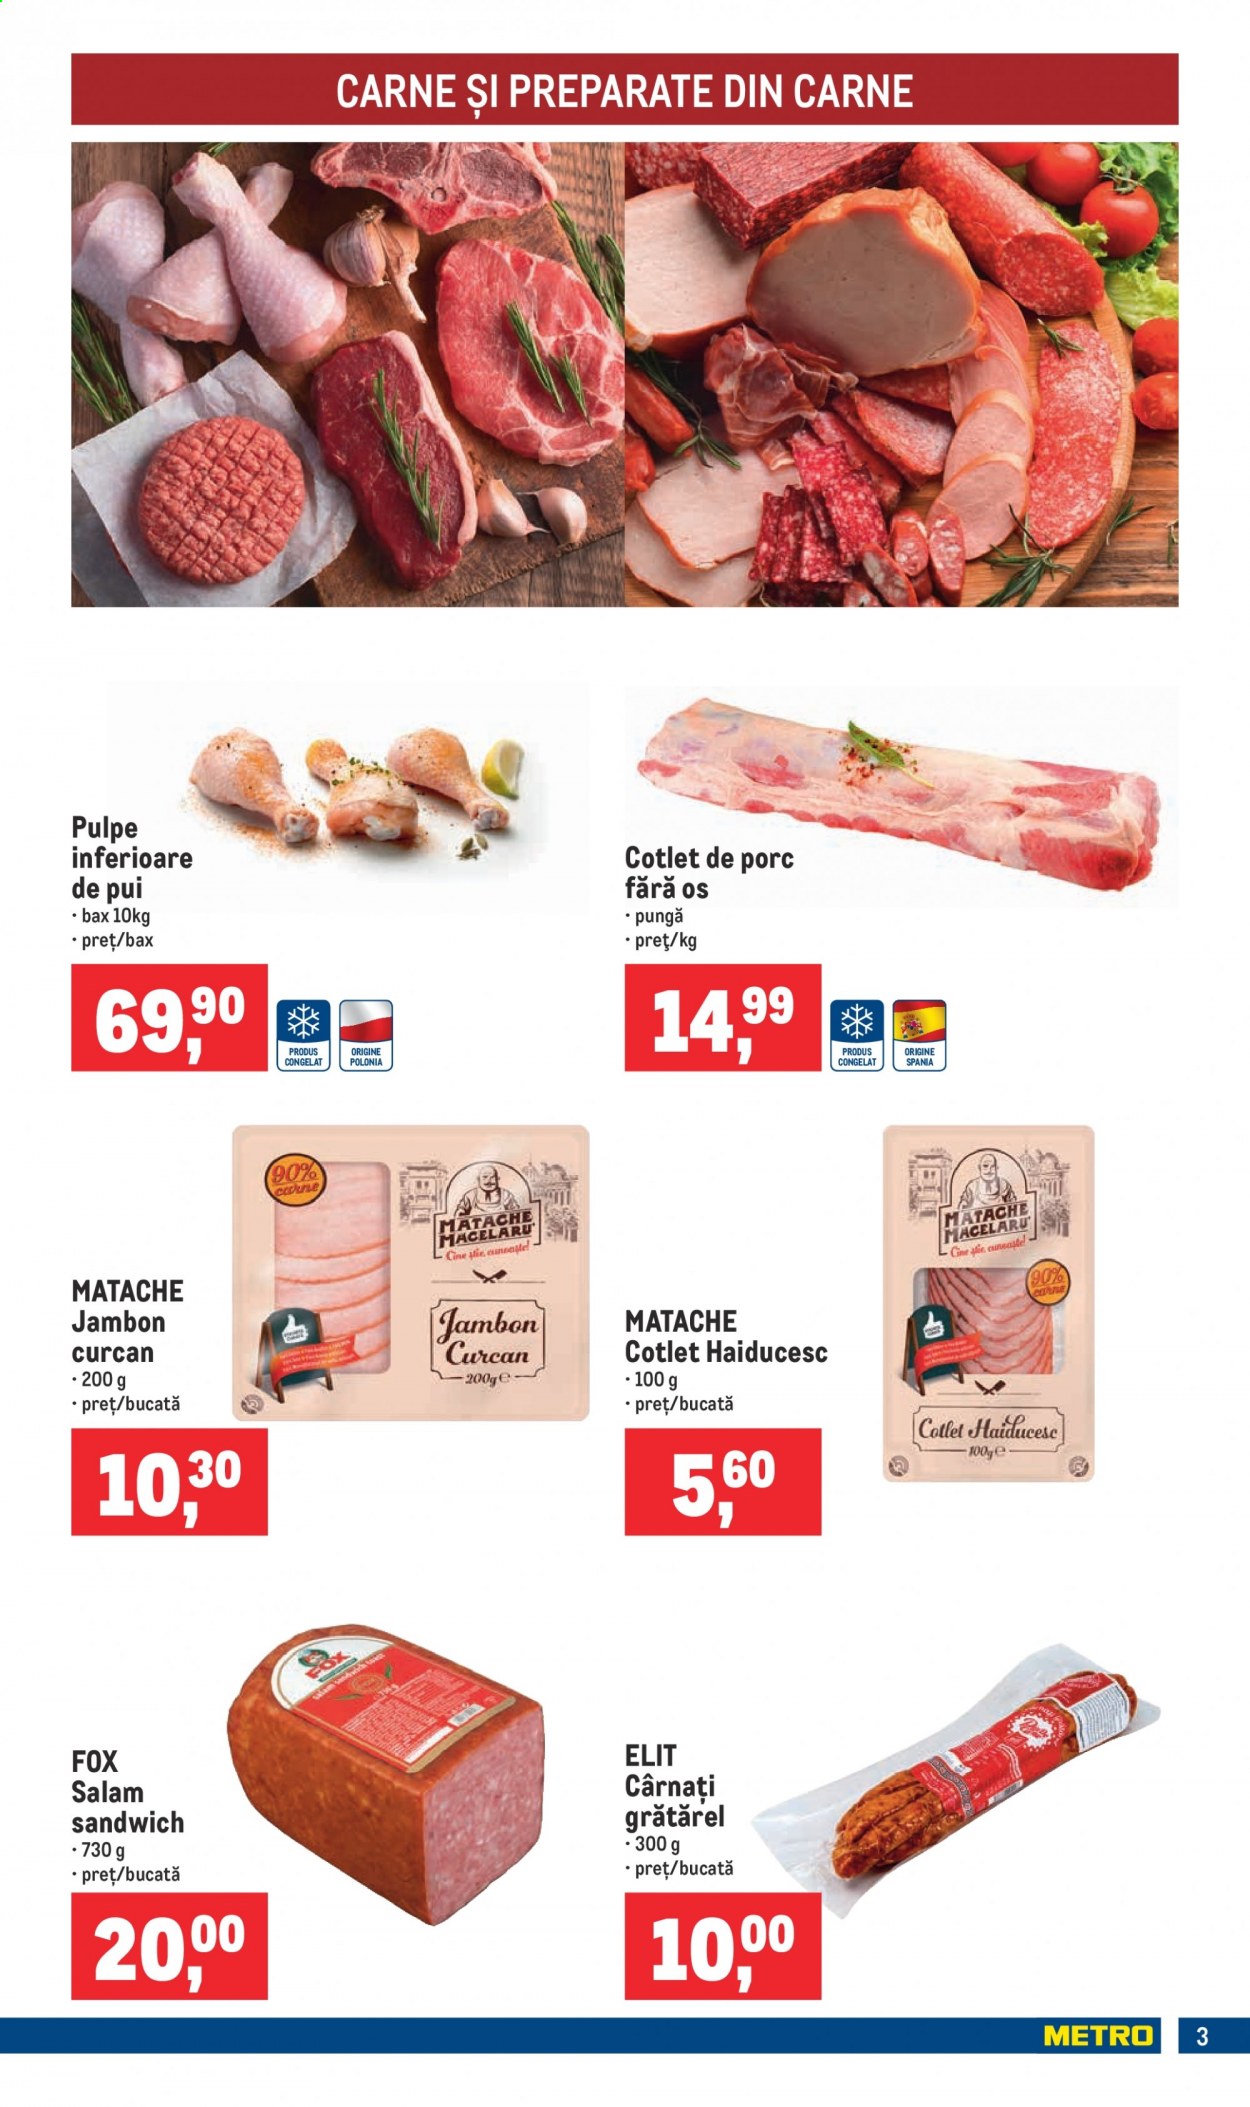 thumbnail - Cataloage Metro - 09.06.2021 - 15.06.2021 - Produse în vânzare - pulpe inferioare de pui, carne de pui, cotlet de porc, salam, cotlet haiducesc, cârnaţi. Pagina 3.